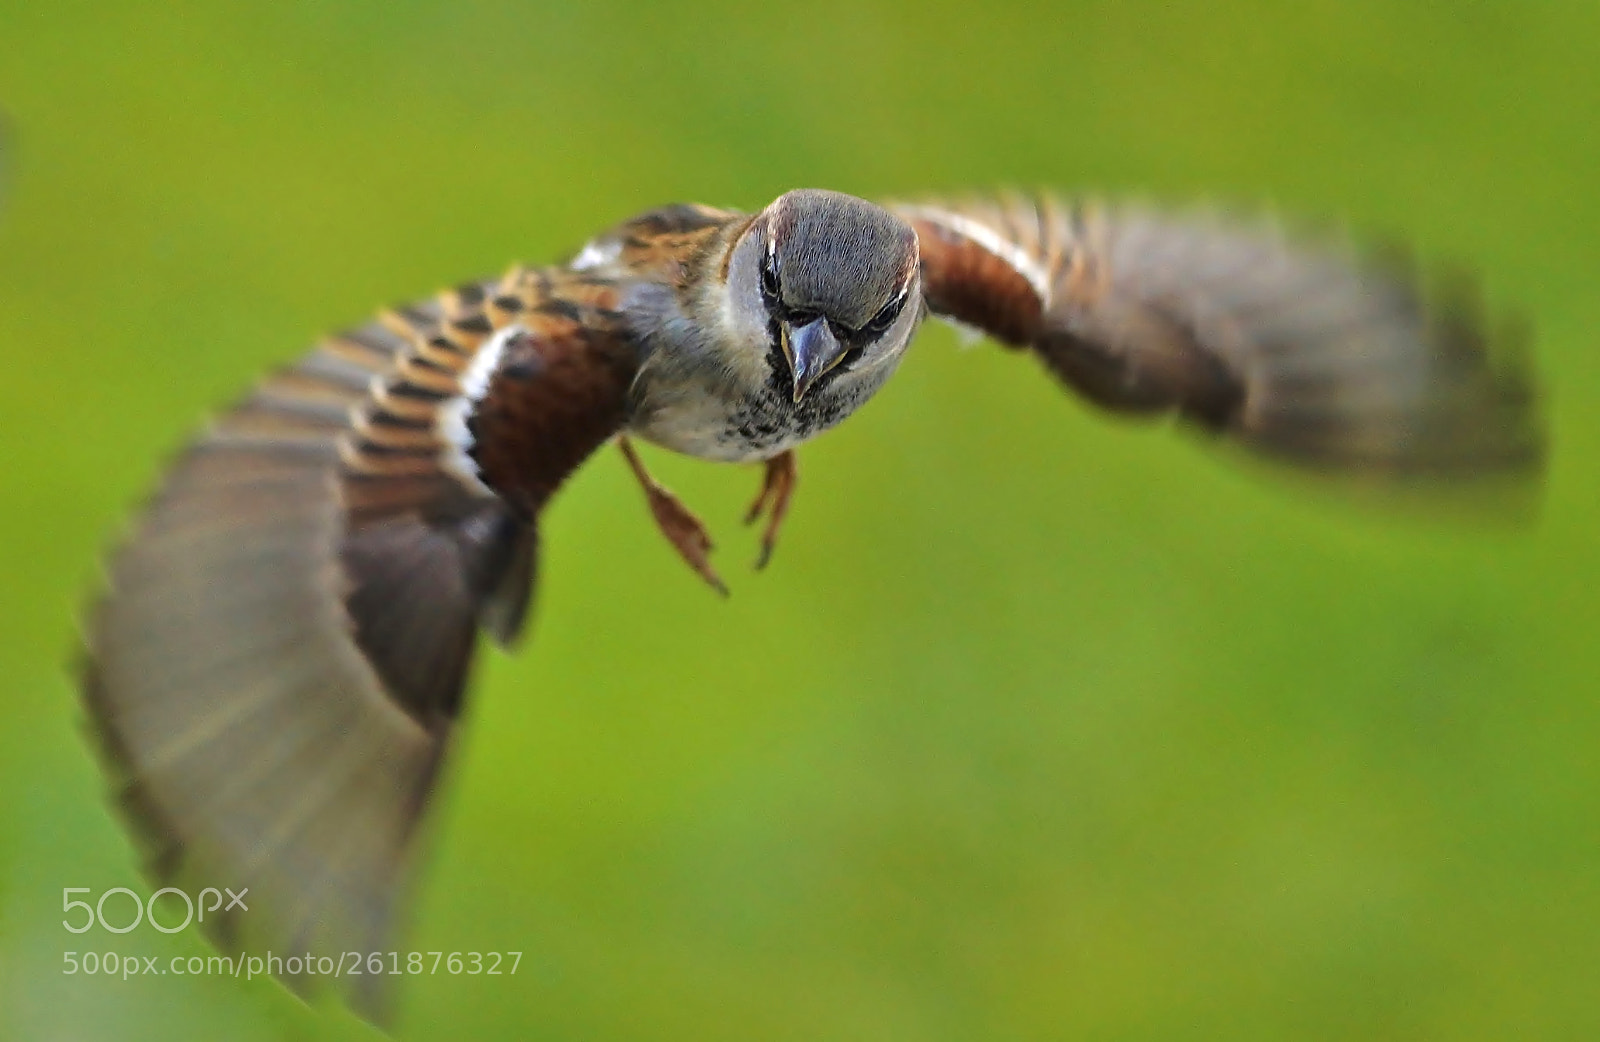 Sony SLT-A77 sample photo. Flying sparrow photography